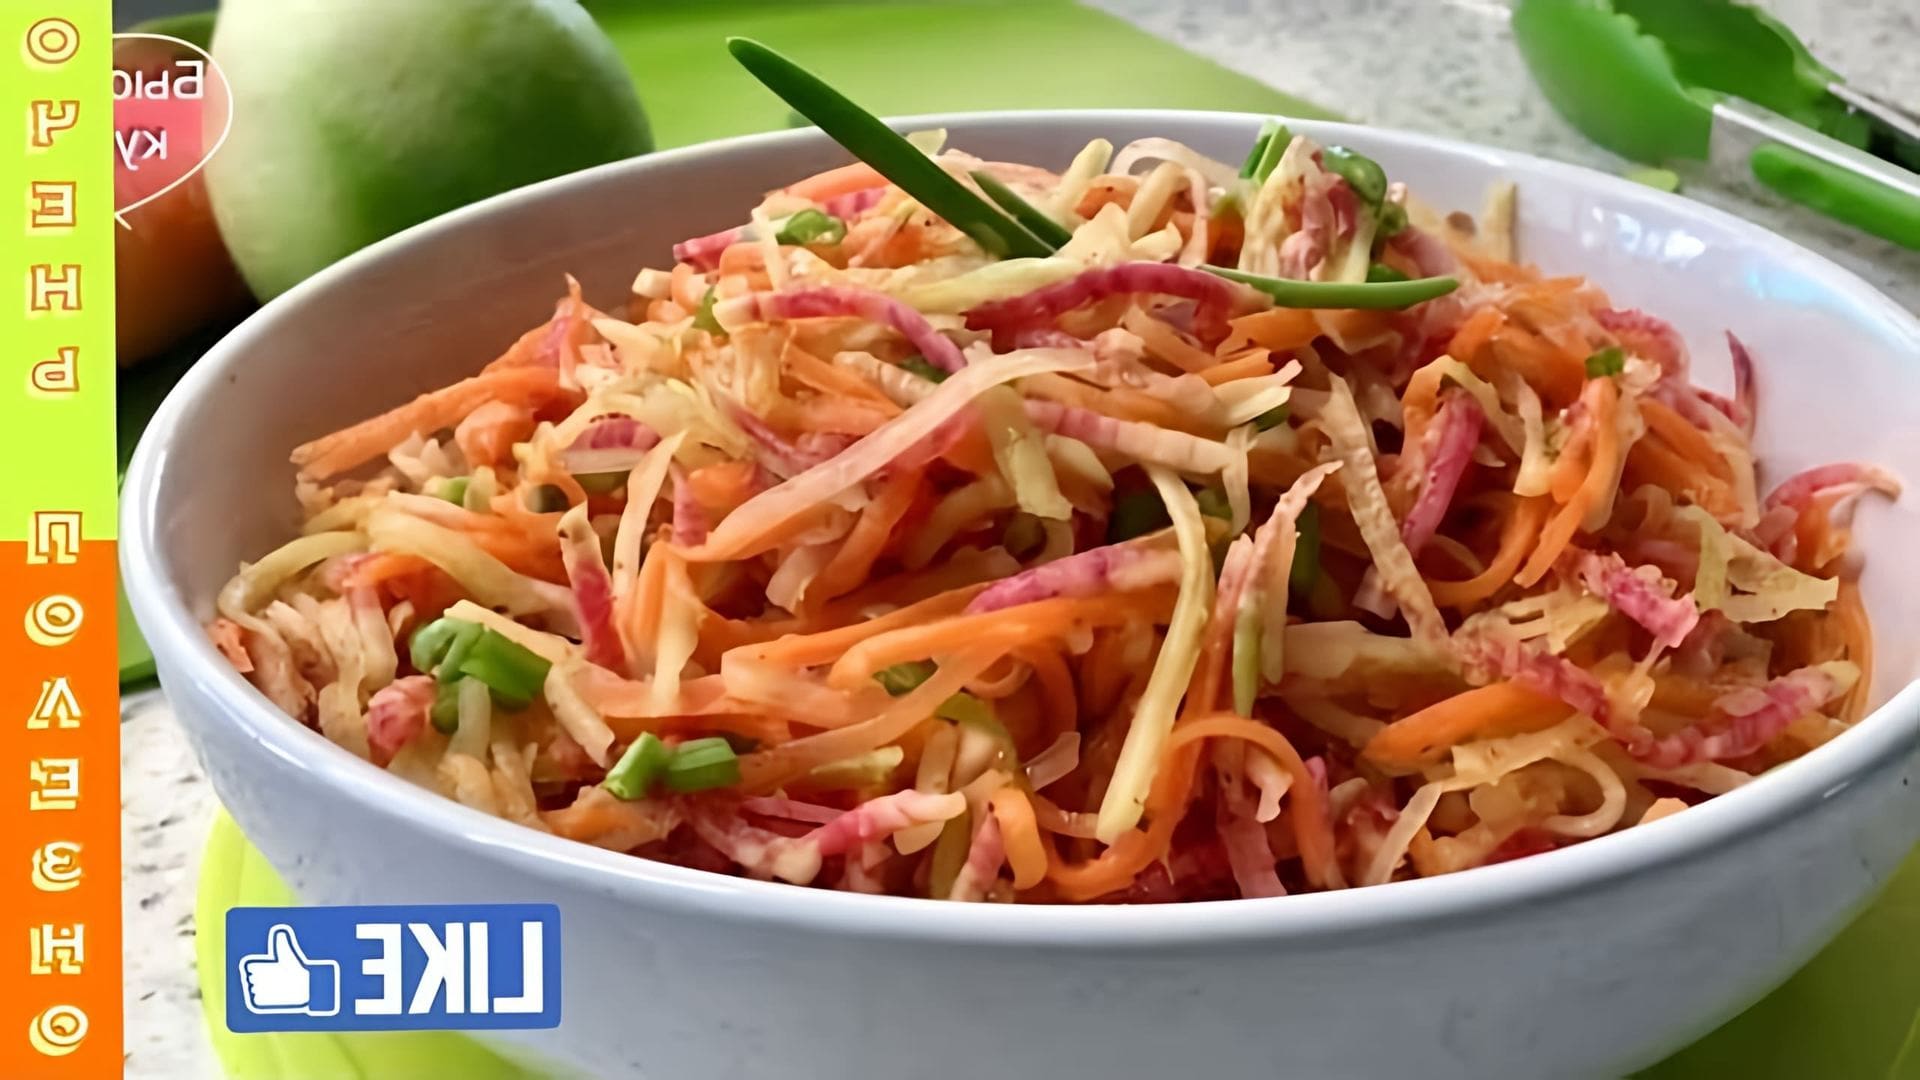 В этом видео демонстрируется процесс приготовления салата с репкой и морковью